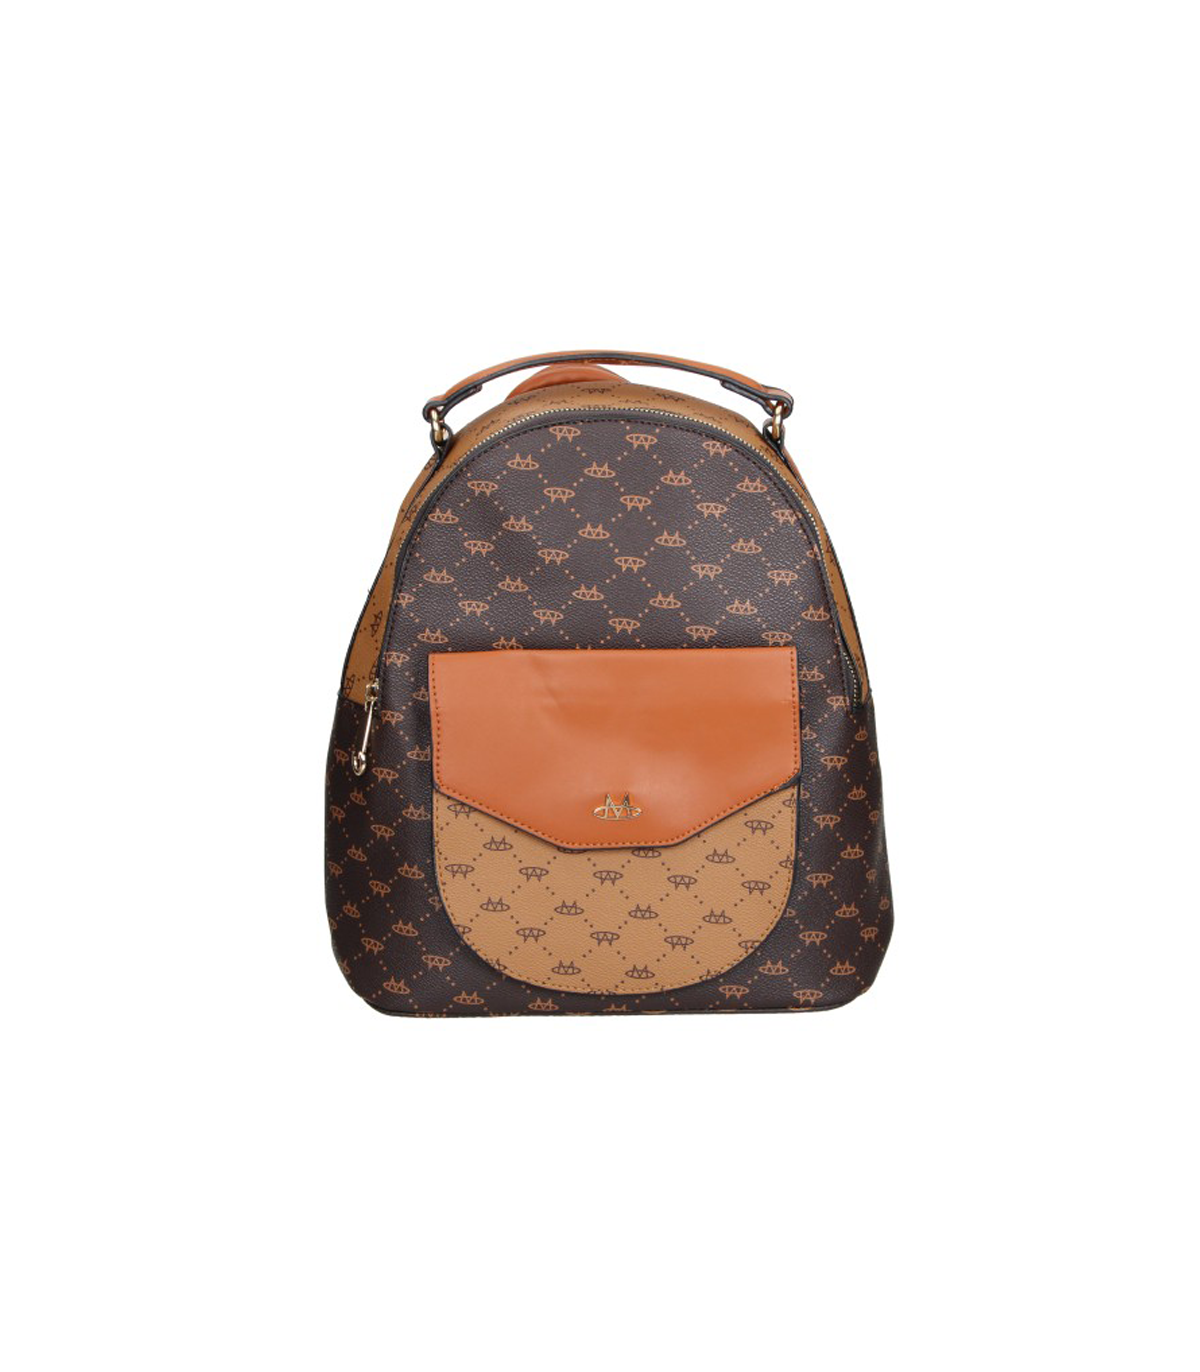 Las mejores ofertas en Medio Louis Vuitton Trunk Bag Bolsas y